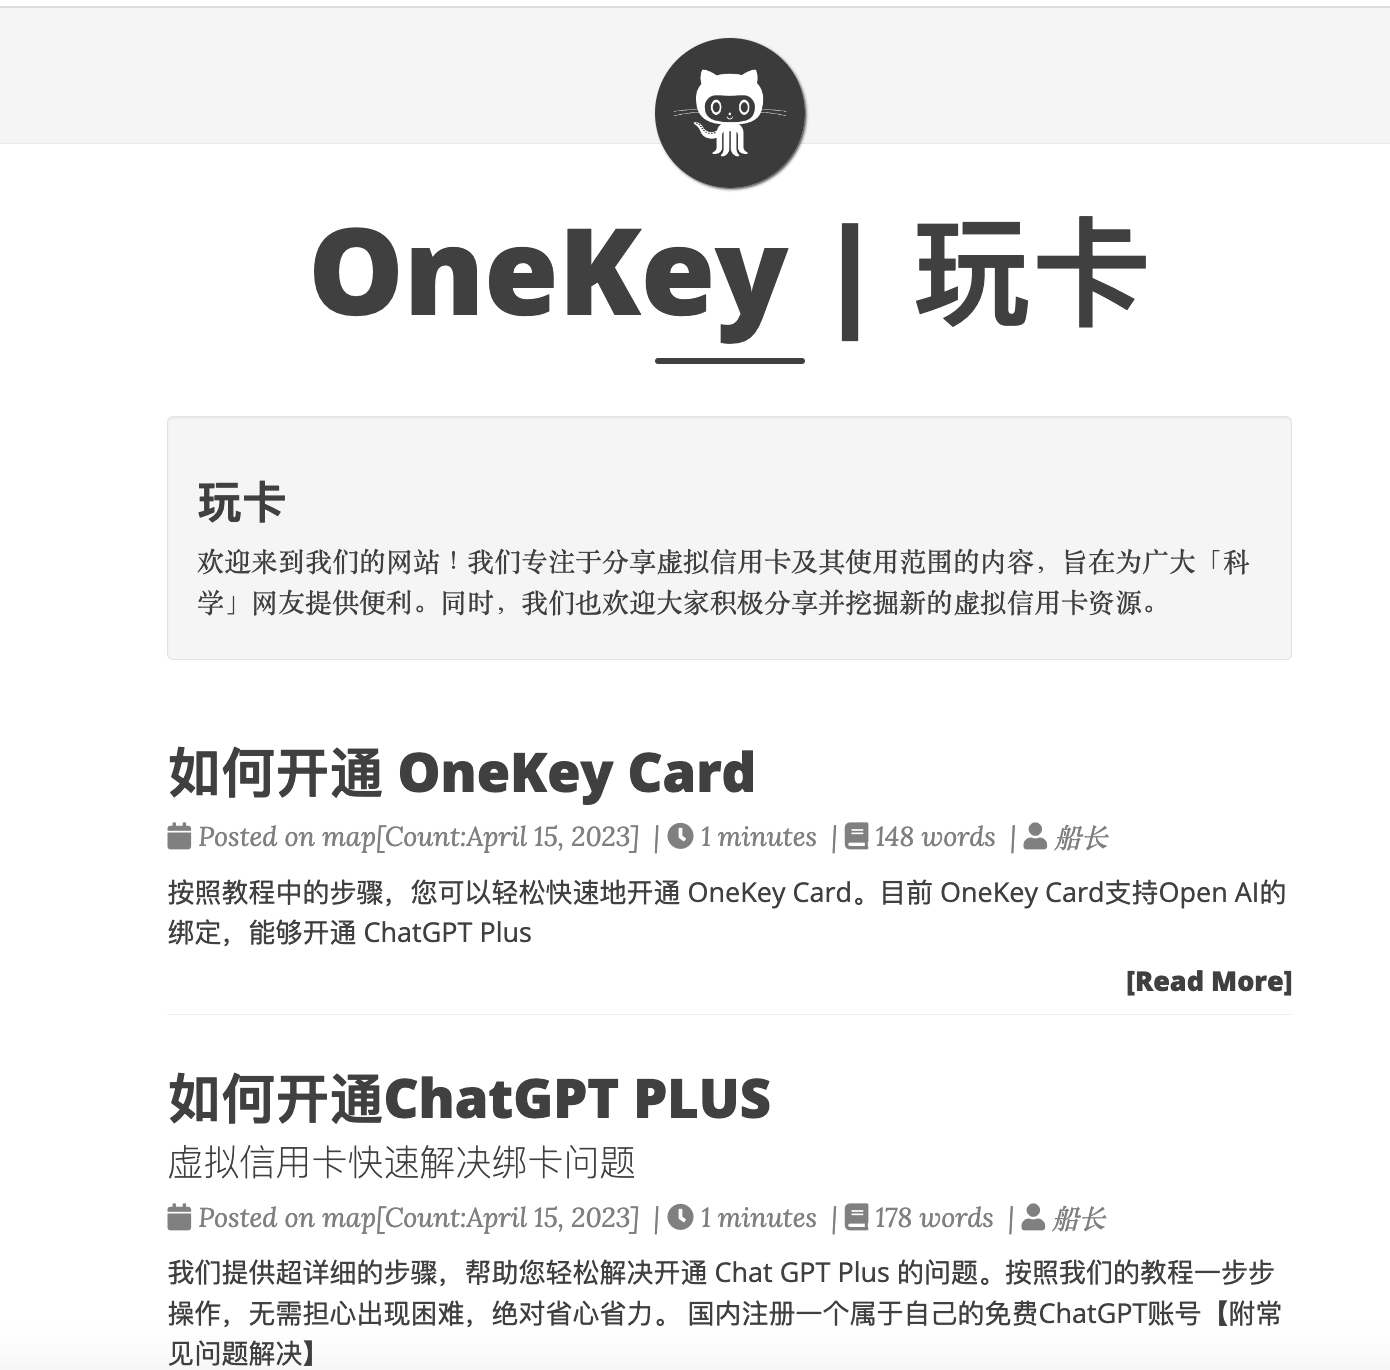 onekey wiki